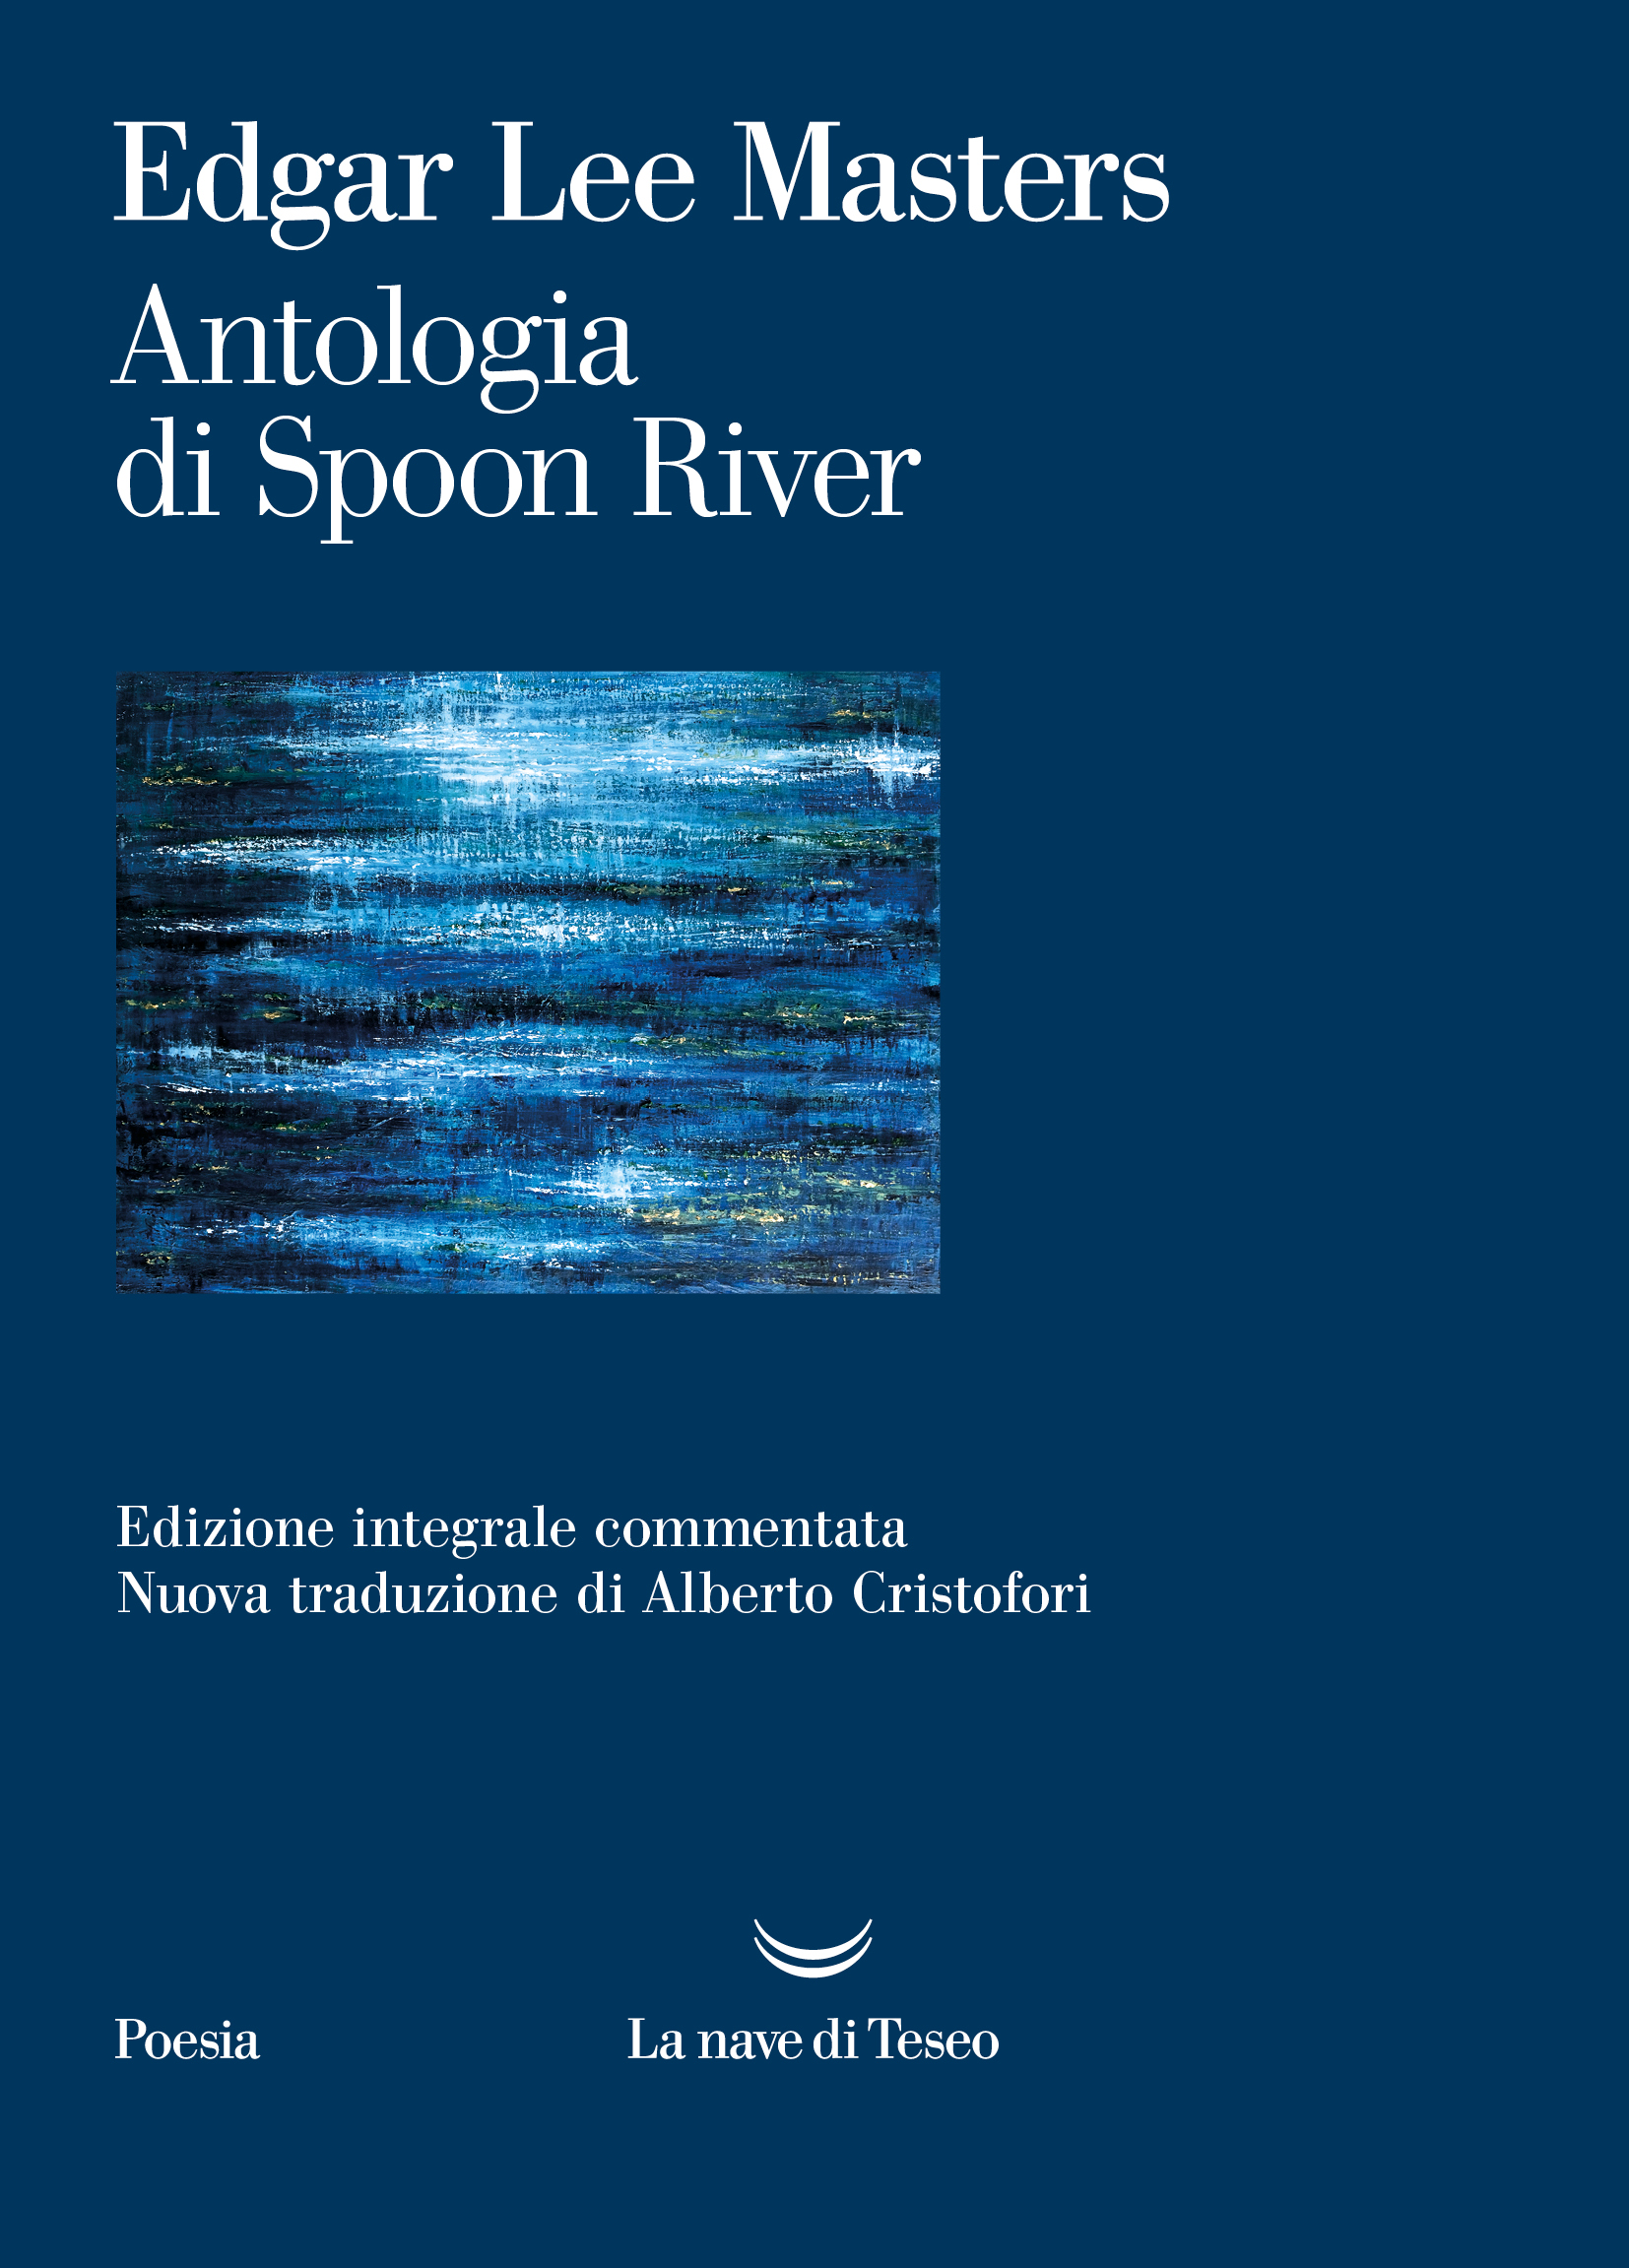 Masters_Antologia-di-spoon-river